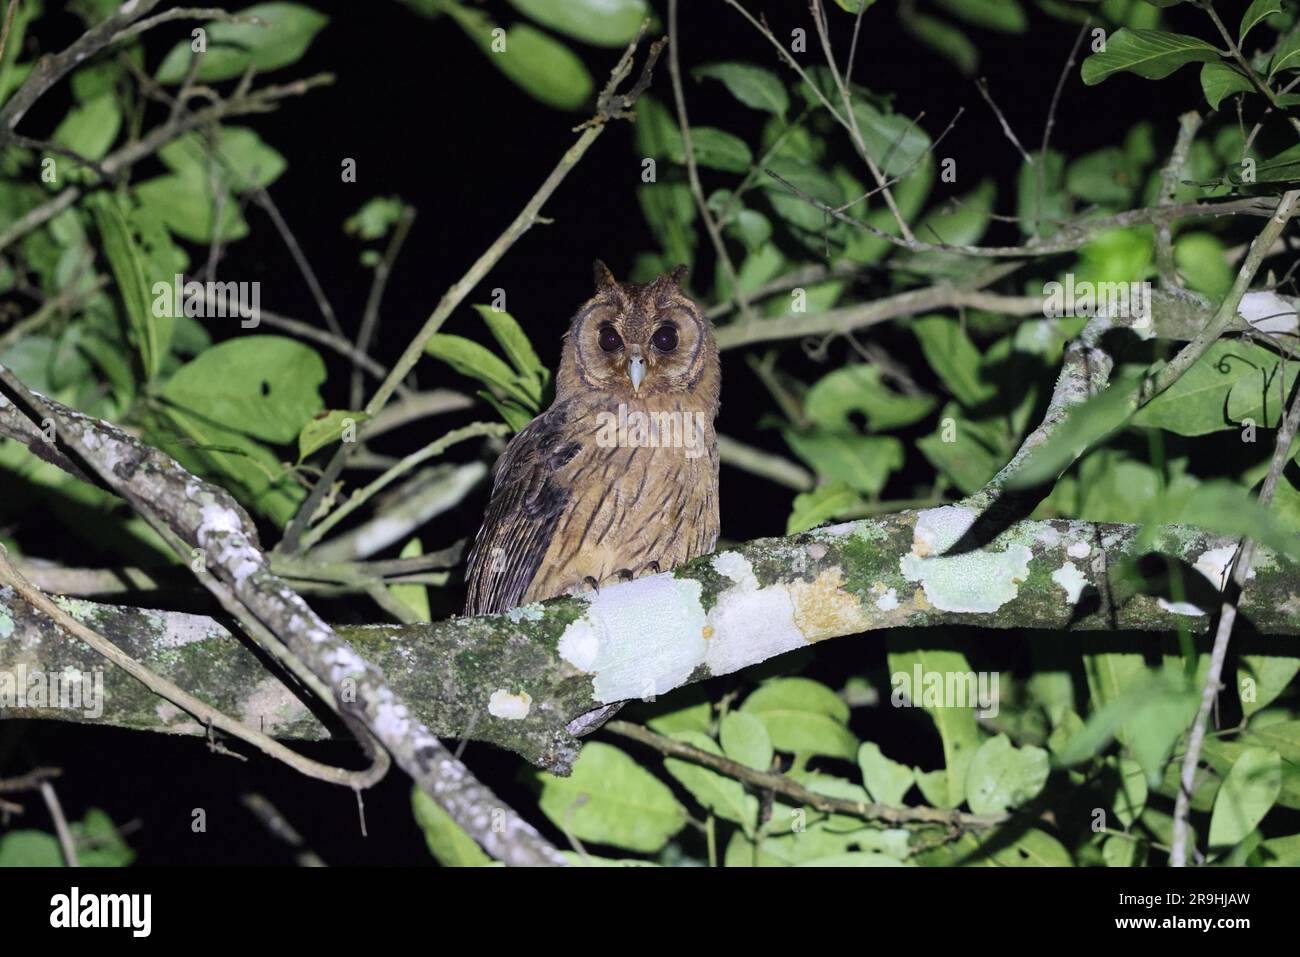 Jamaican owl (Asio grammicus) in Jamaica Stock Photo